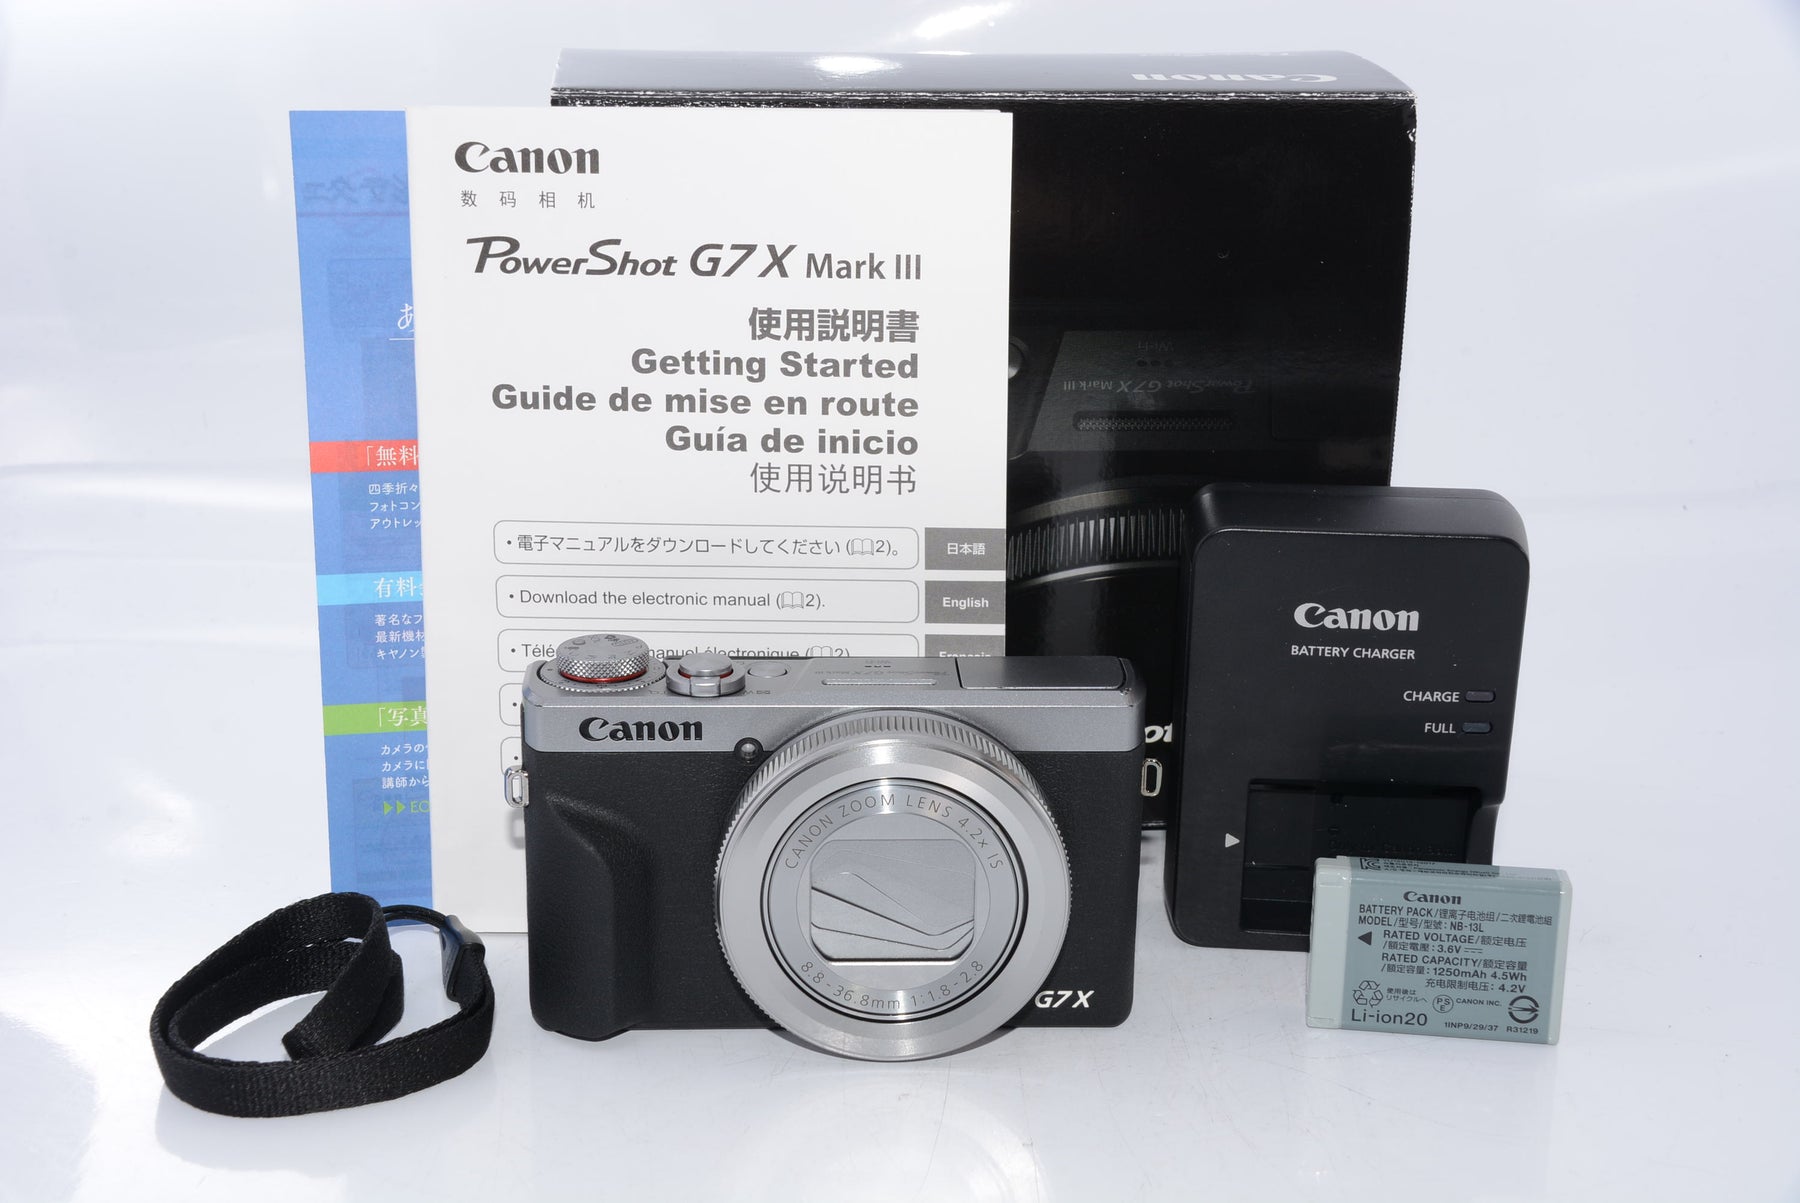 外観特上級】Canon コンパクトデジタルカメラ PowerShot G7 X Mark III シルバー 1.0型センサー/F1.8レン